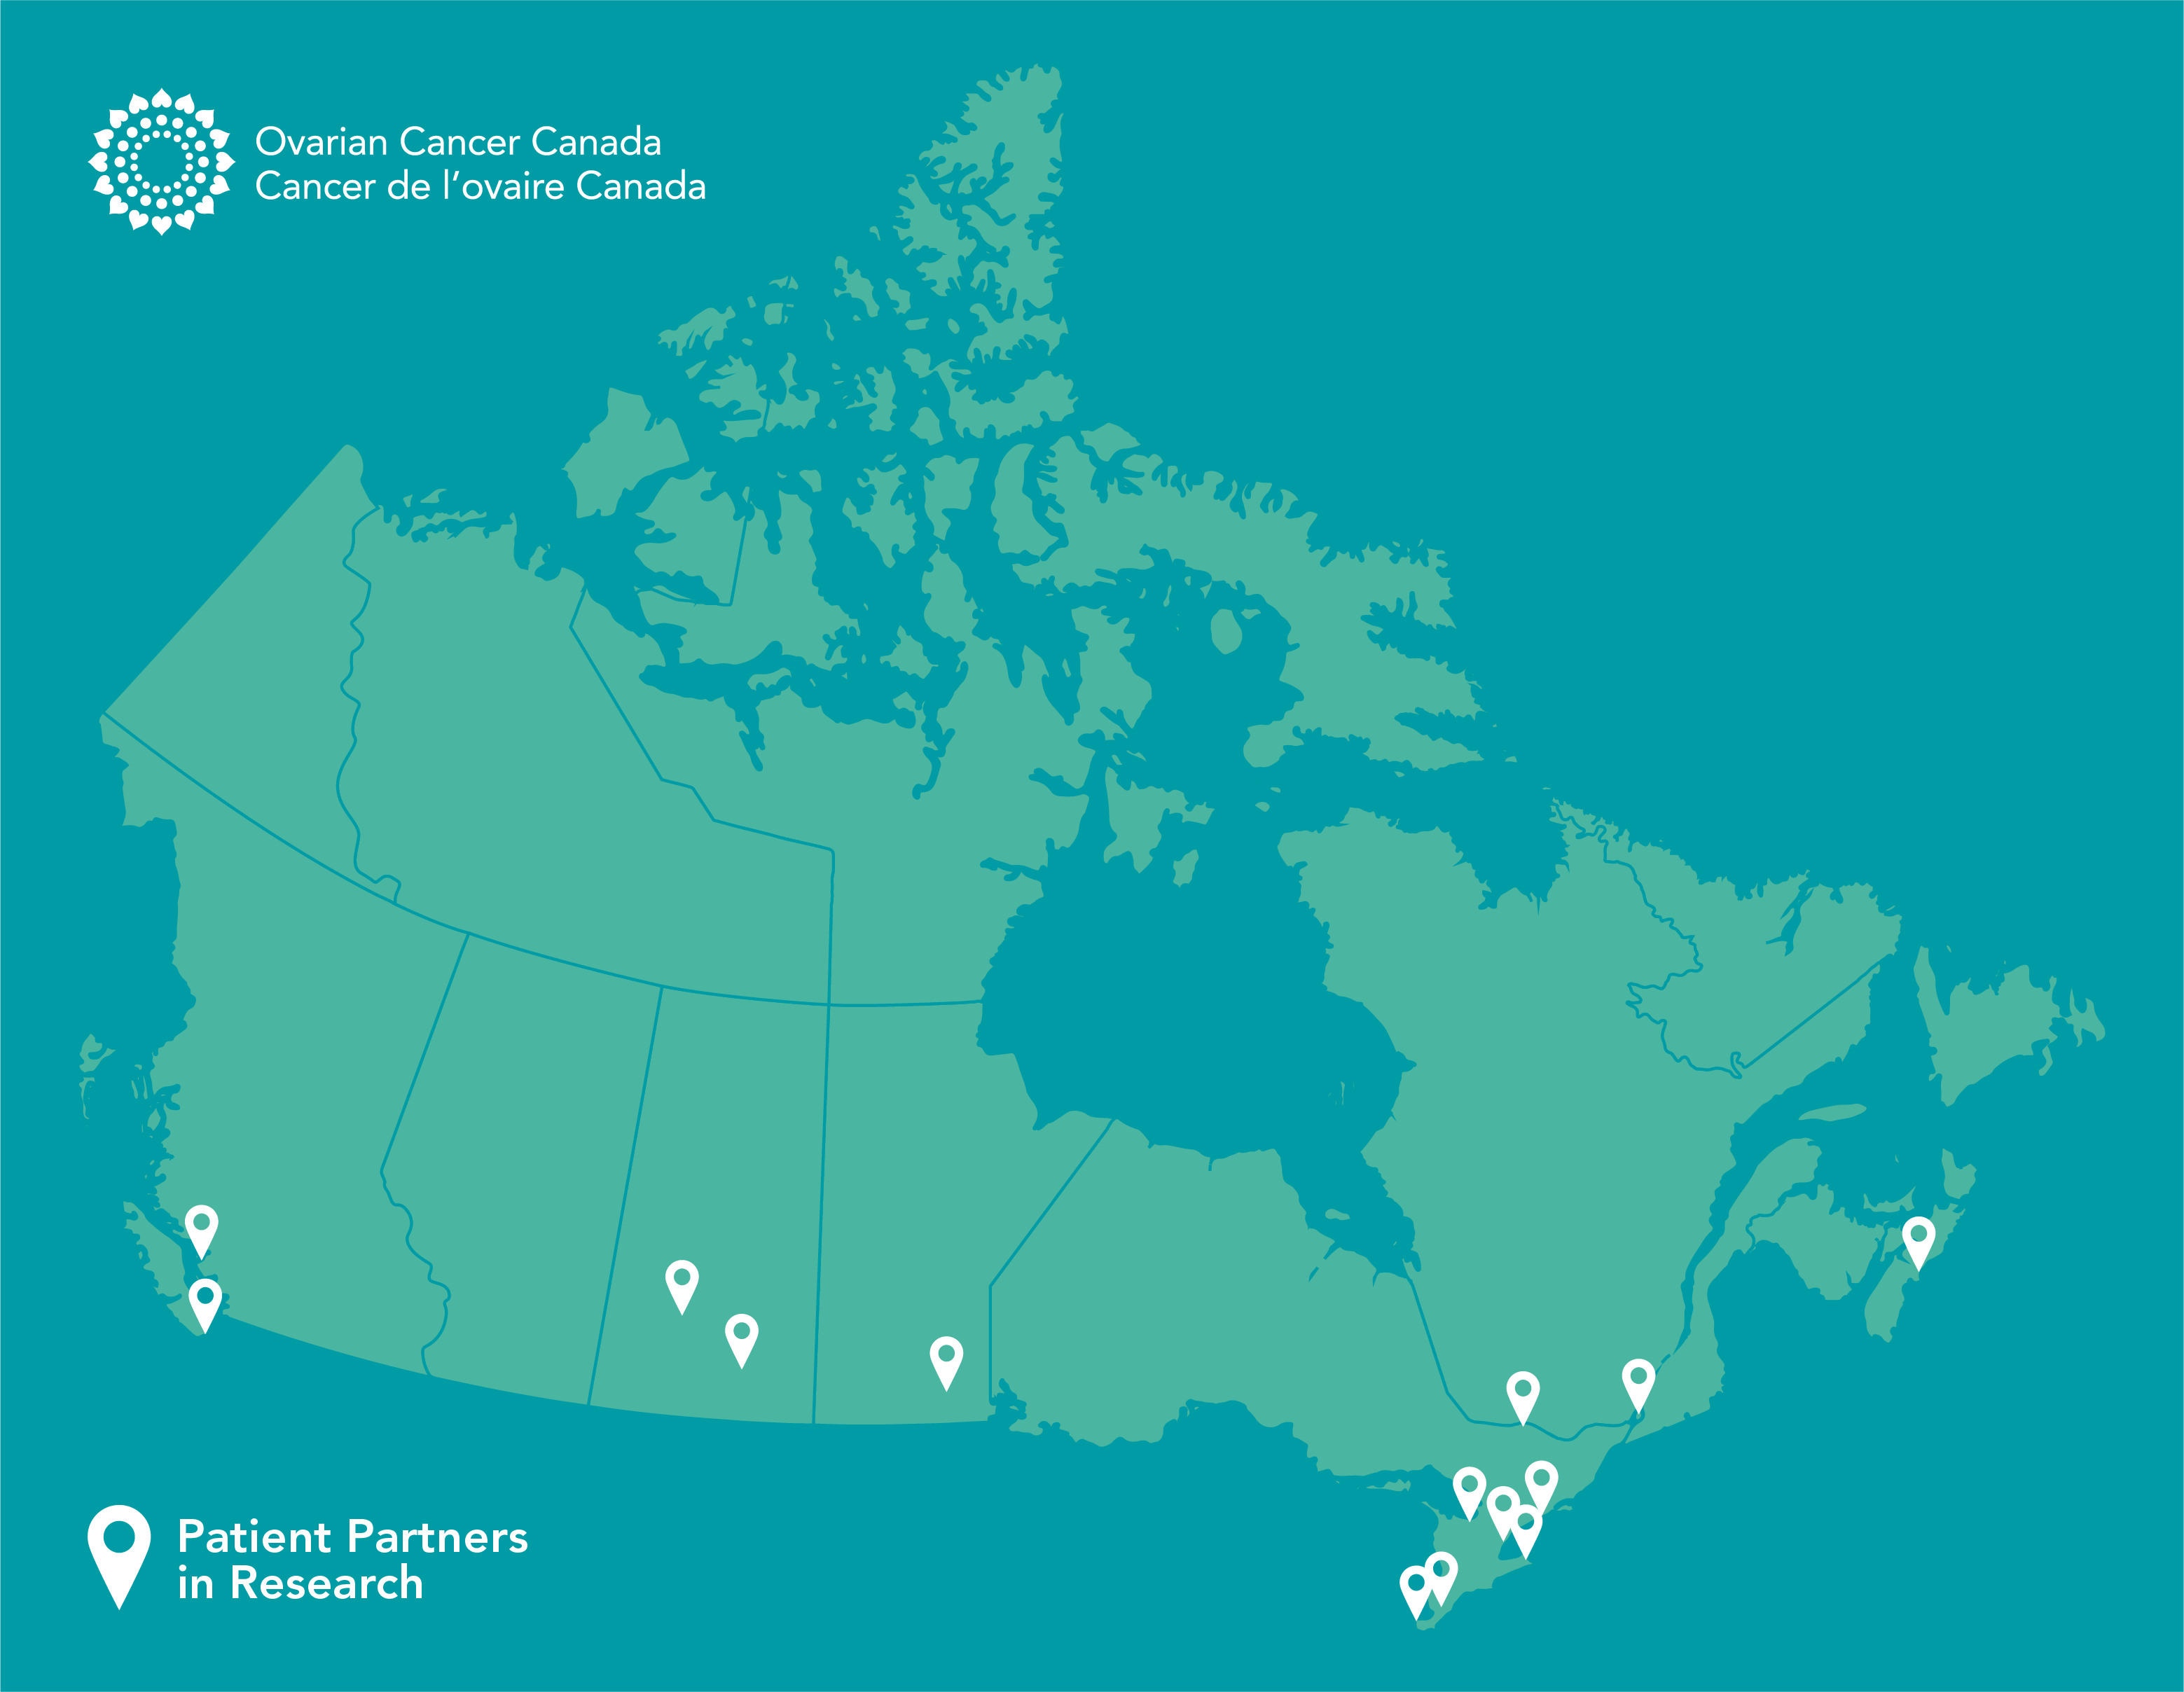 Patient Partners across Canada